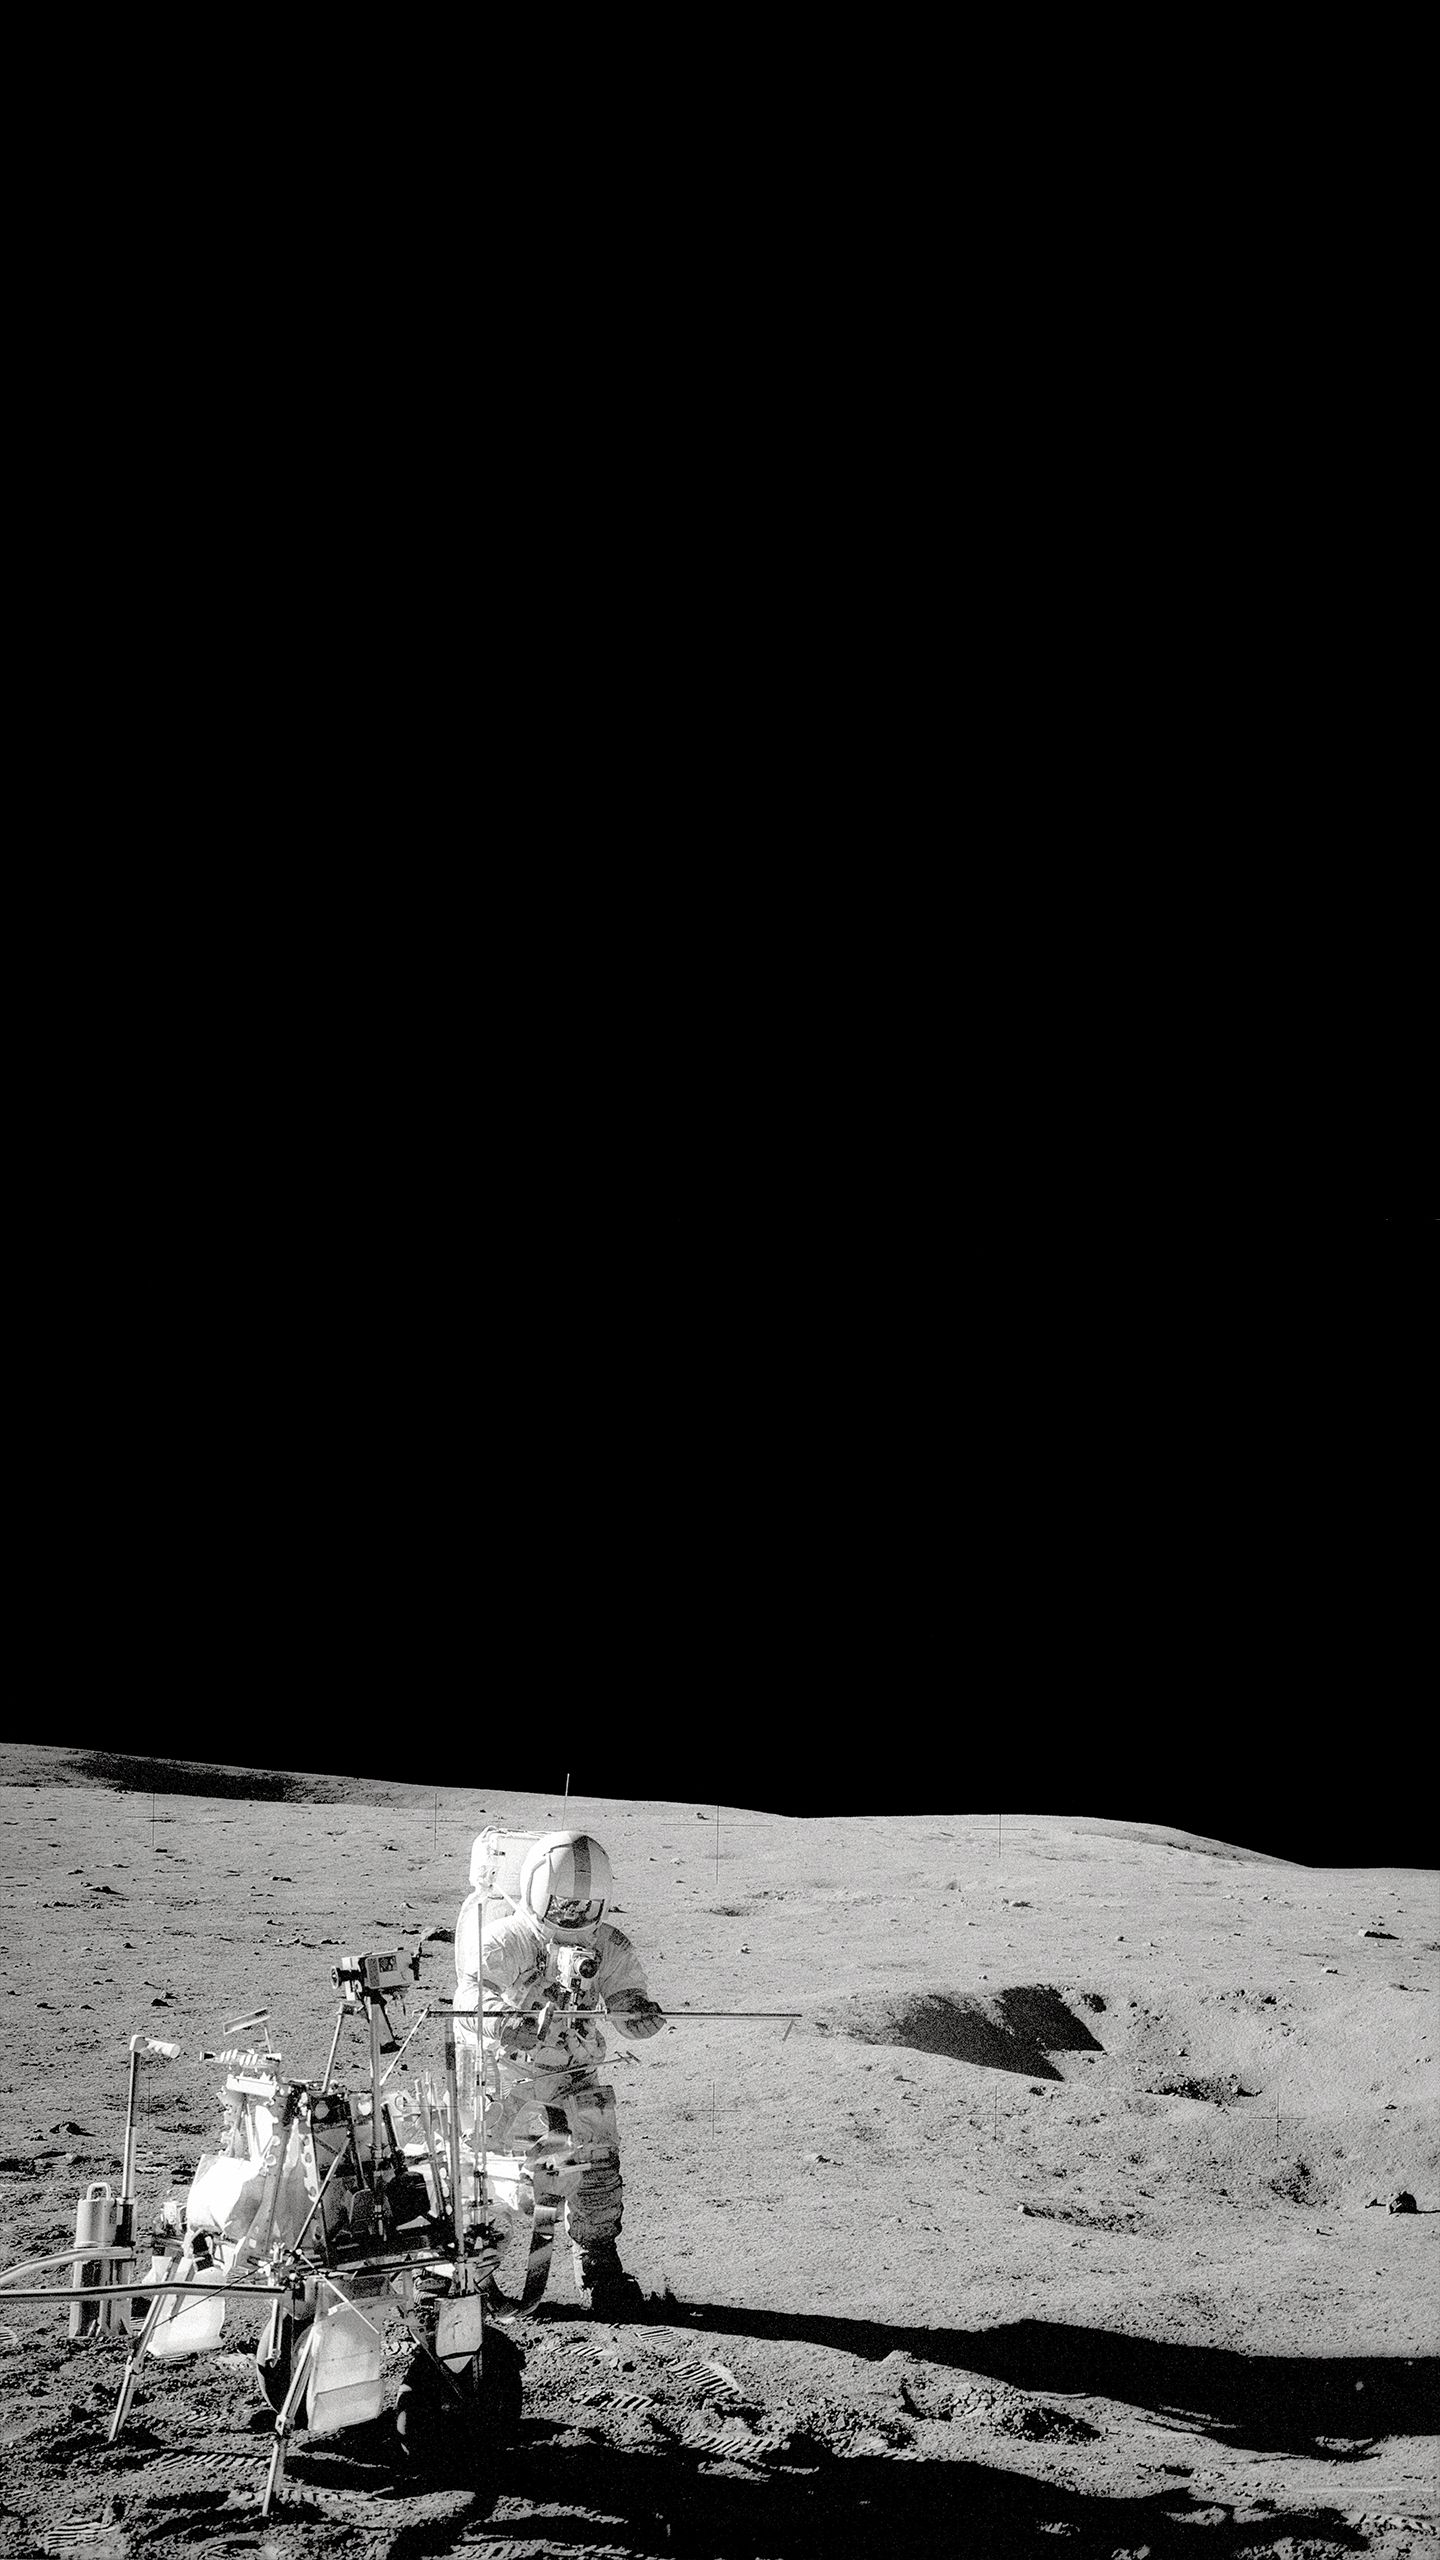 Amoled moon landing [1440X2560]